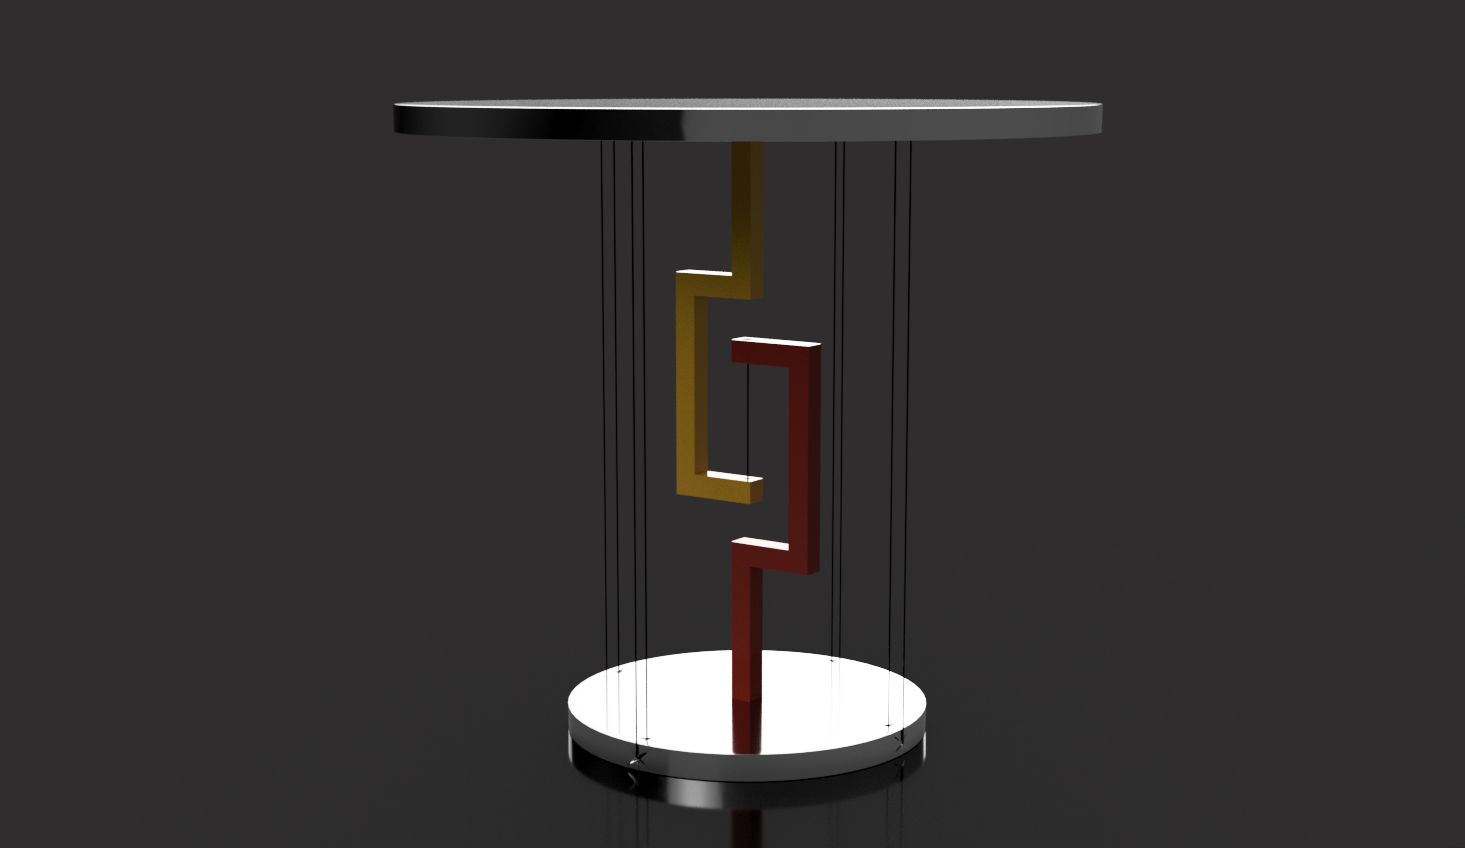 Floating TableTOp_04.png Télécharger fichier STL gratuit Table flottante • Design imprimable en 3D, Seabird